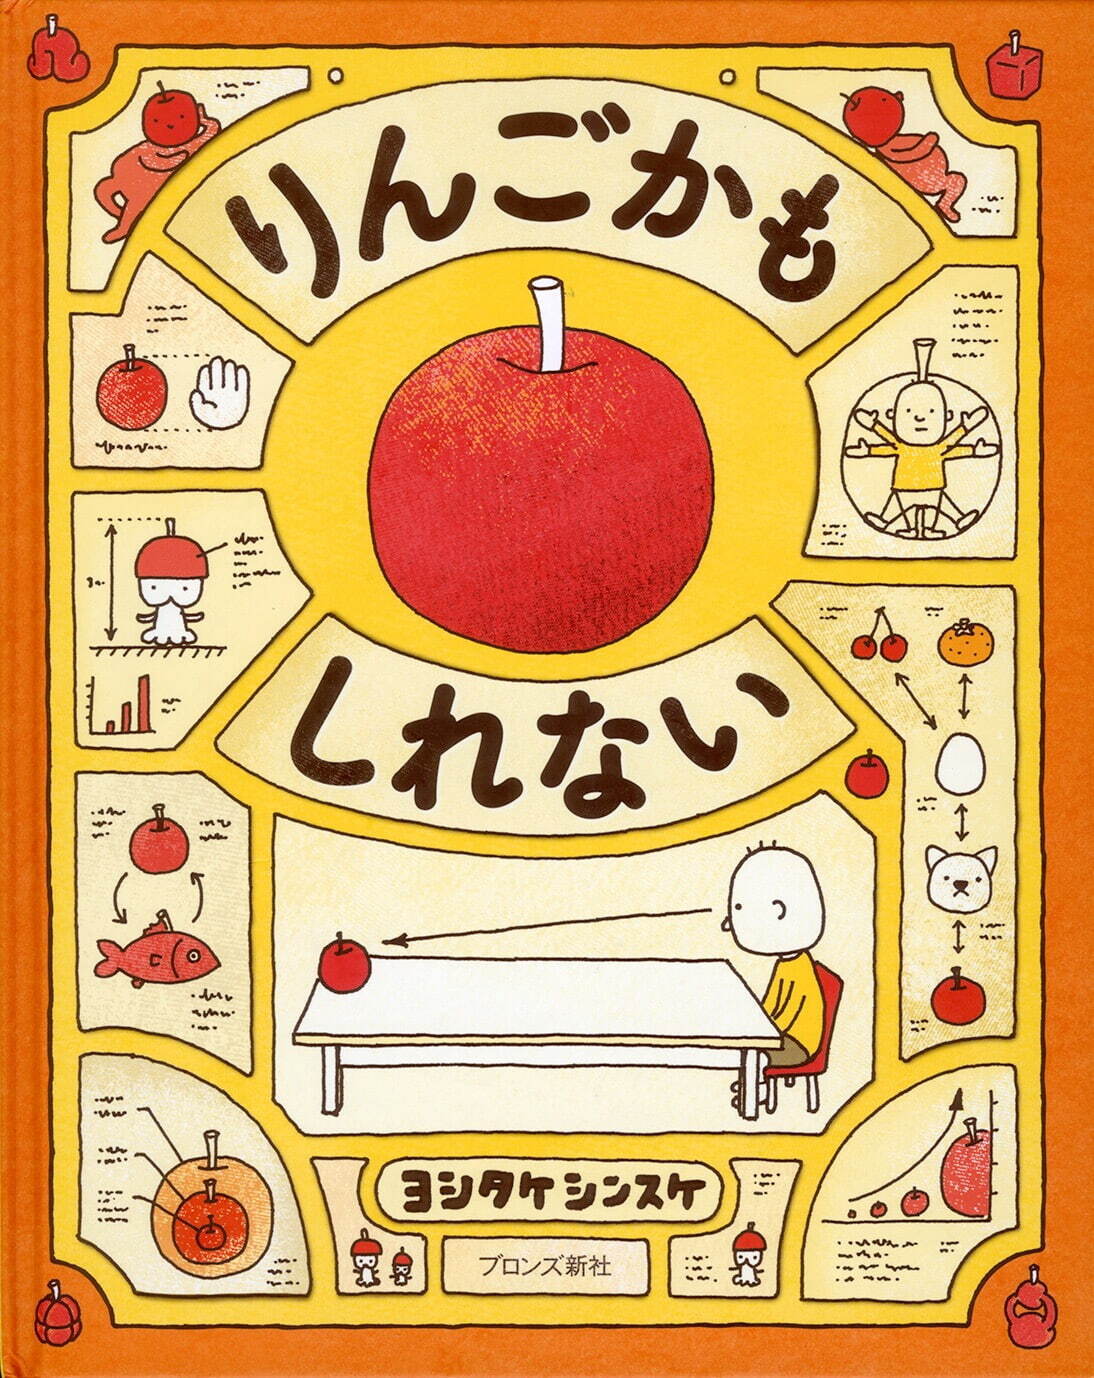 ヨシタケシンスケ『りんごかもしれない』ブロンズ新社 2013年